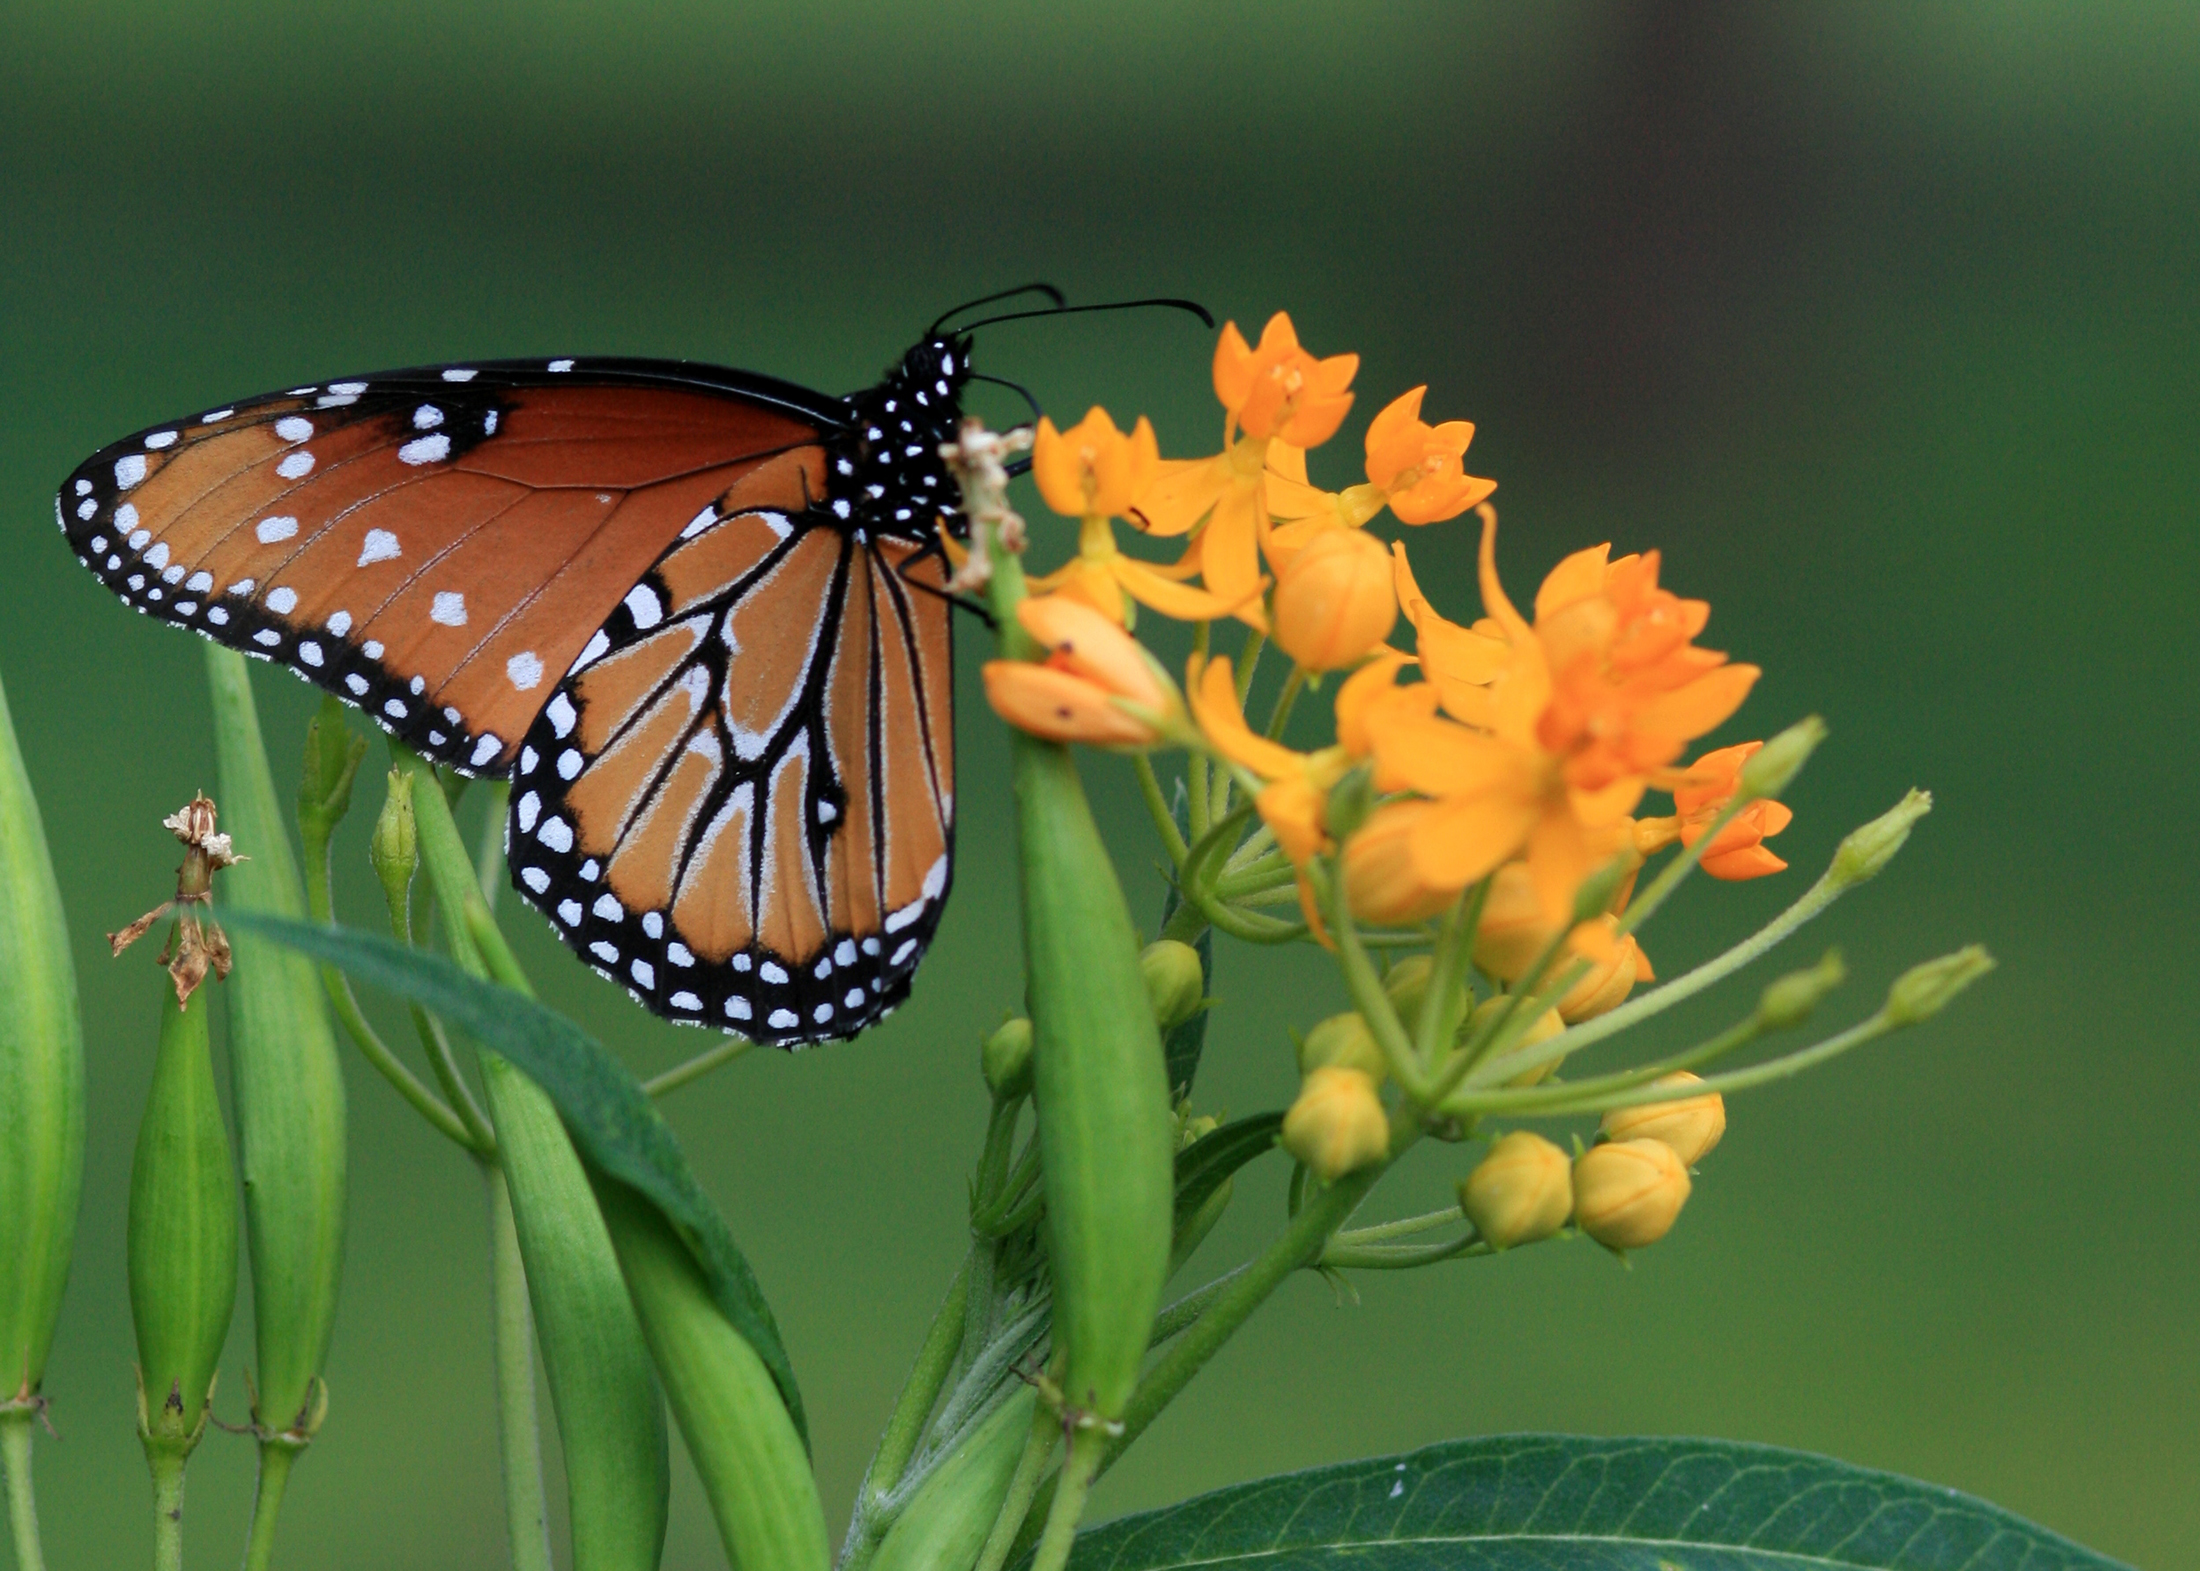 Scientists Seek Public Help to Track Monarch Butterfly Milkweed Habitat